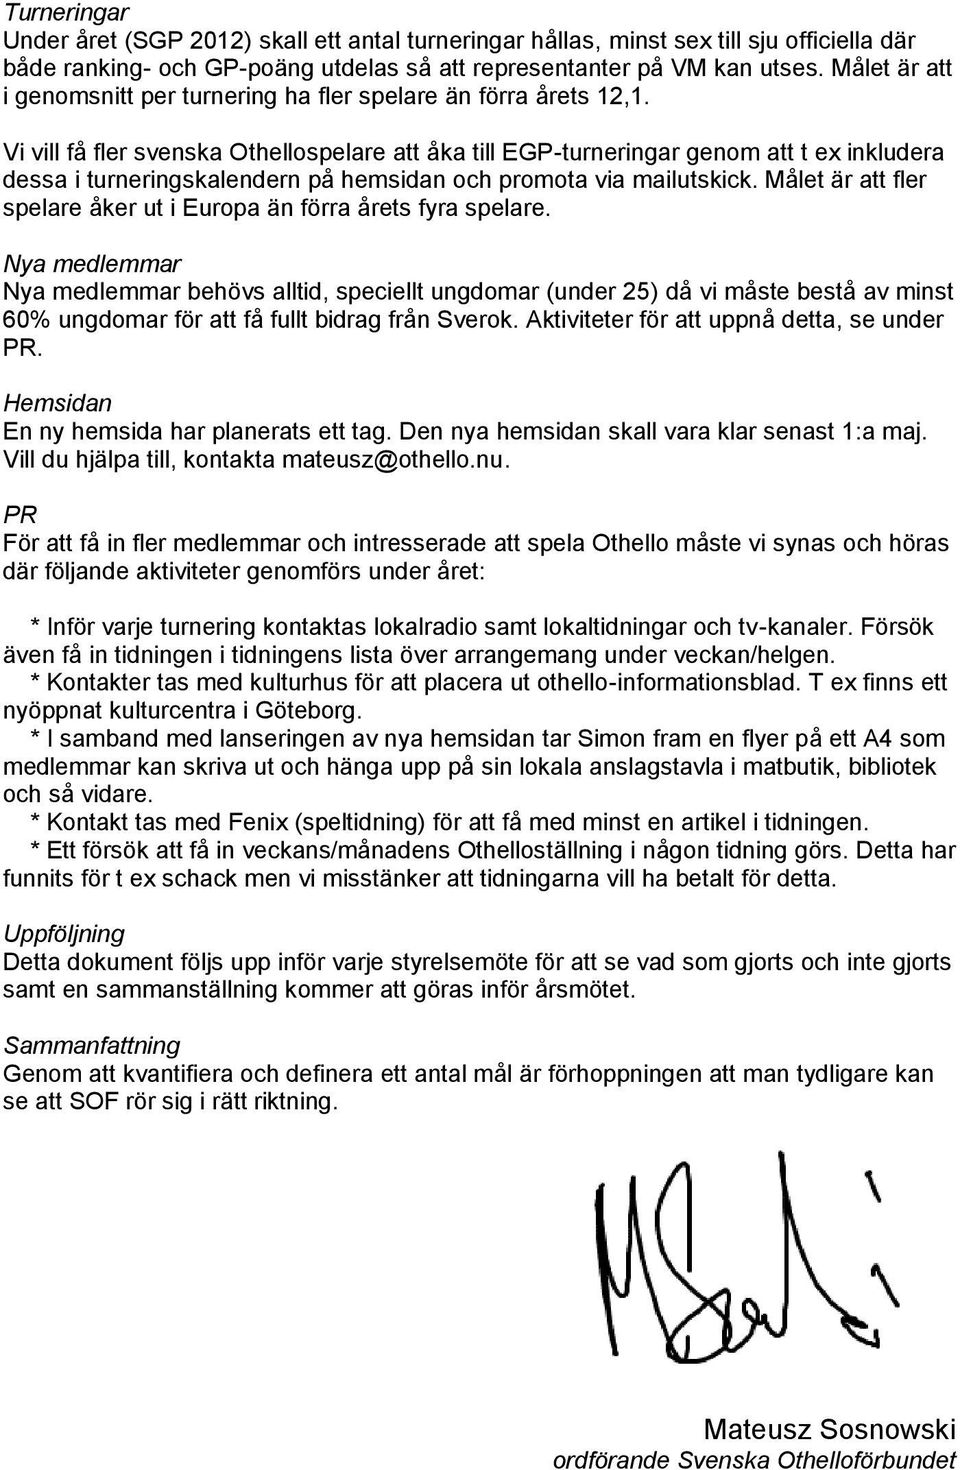 Vi vill få fler svenska Othellospelare att åka till EGP-turneringar genom att t ex inkludera dessa i turneringskalendern på hemsidan och promota via mailutskick.